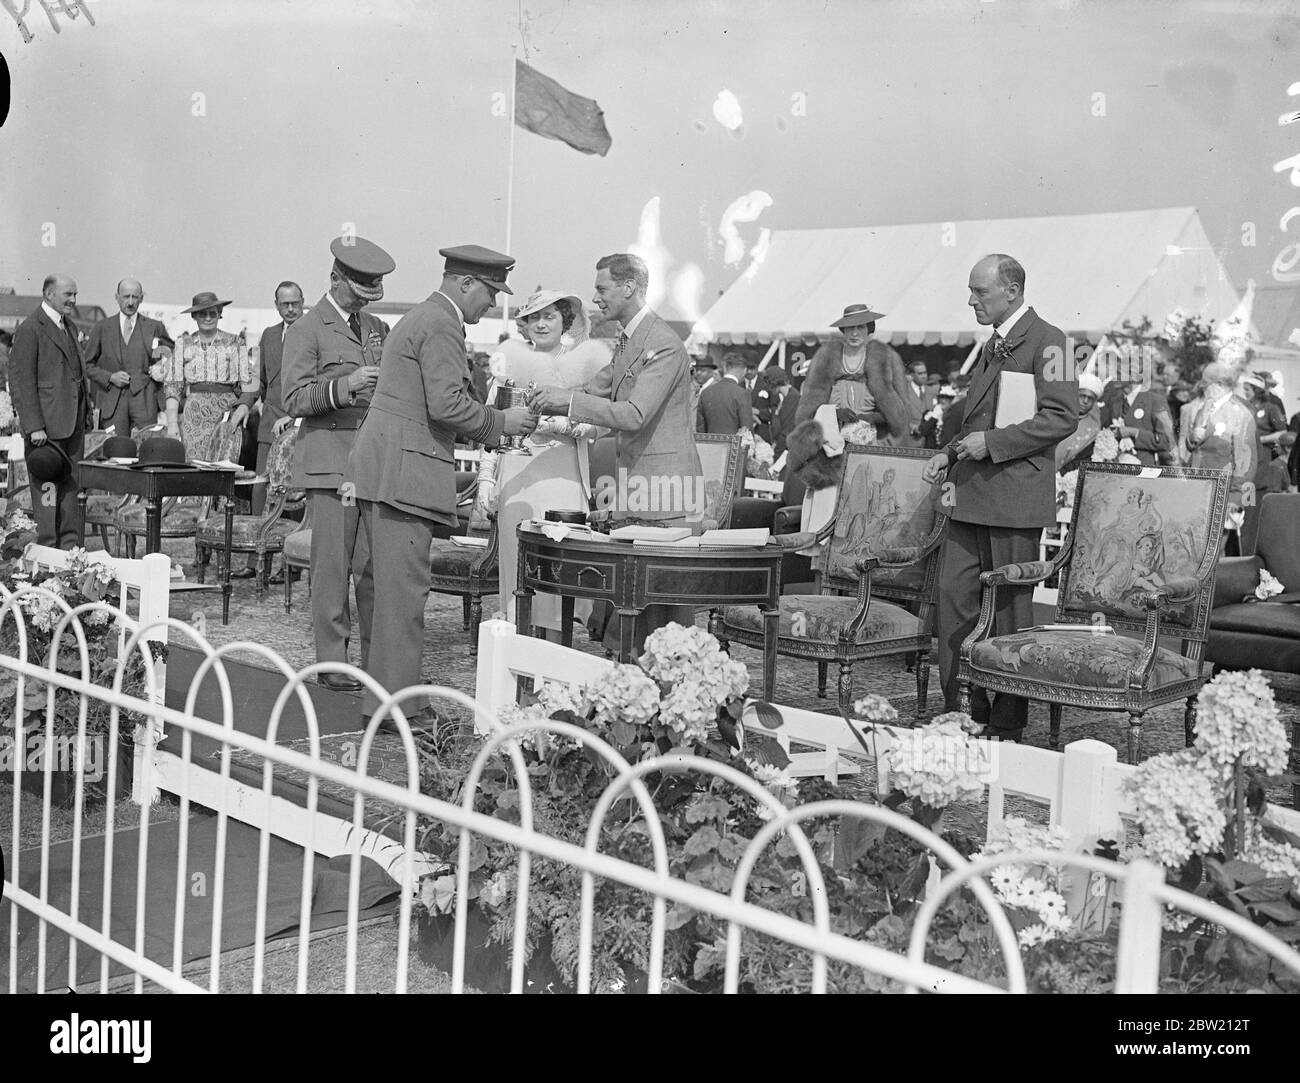 Le roi présente la coupe au commandant de l'escadre, D. V. Carnegie, lauréat de la course du quartier général par le ministère de l'Air (AFC). Le roi et la reine ont assisté au Royal Air Force Pageant annuel à l'aérodrome d'Hendon. 26 juin 1937 Banque D'Images